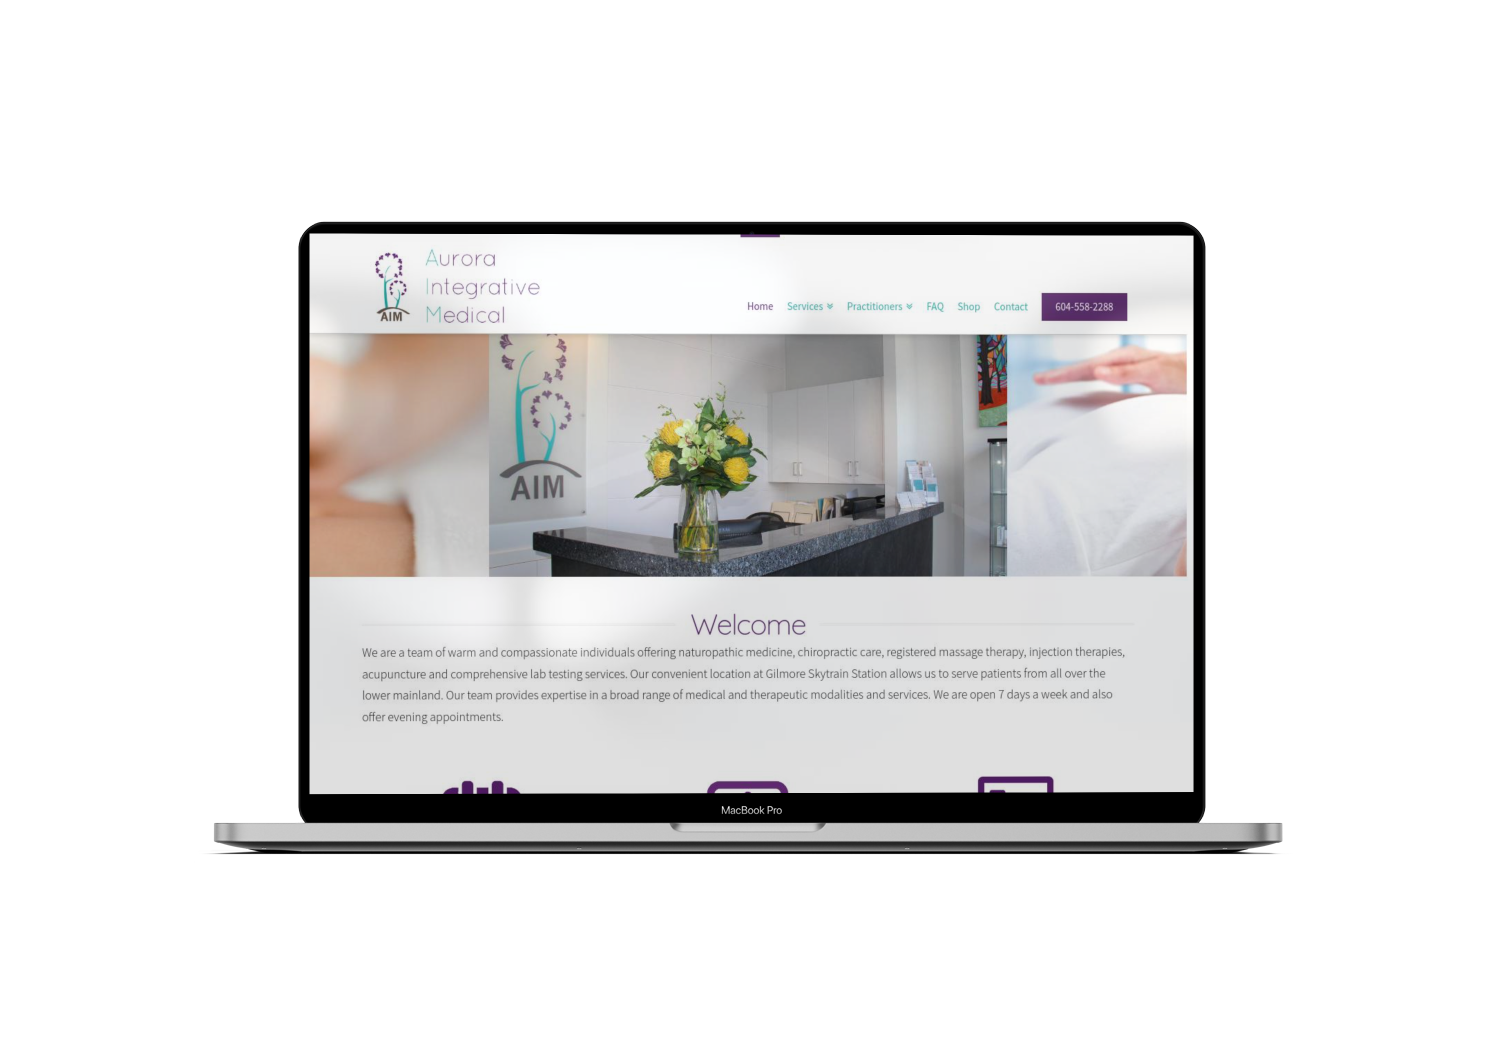 Mockup Mac Website Design for Medicine